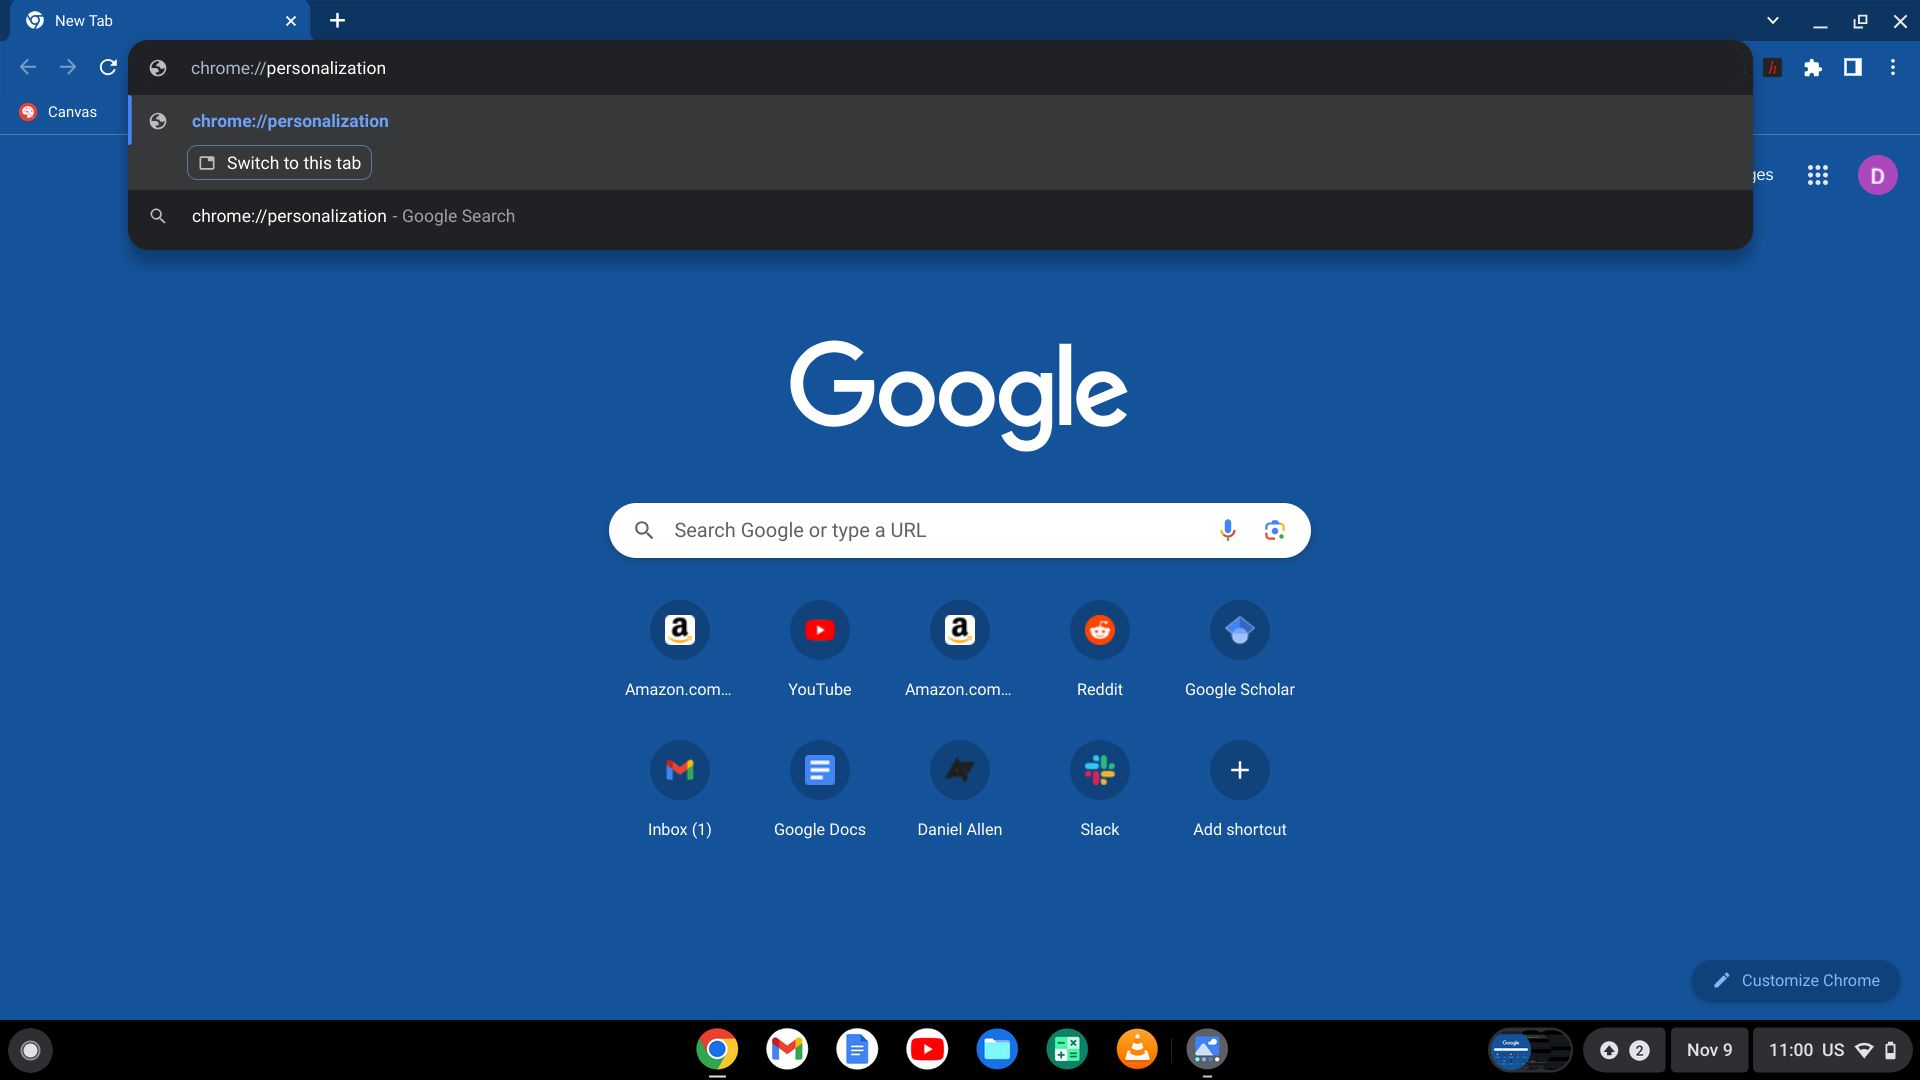 Chromebook Navegador Chrome navegando até o Personalization Hub